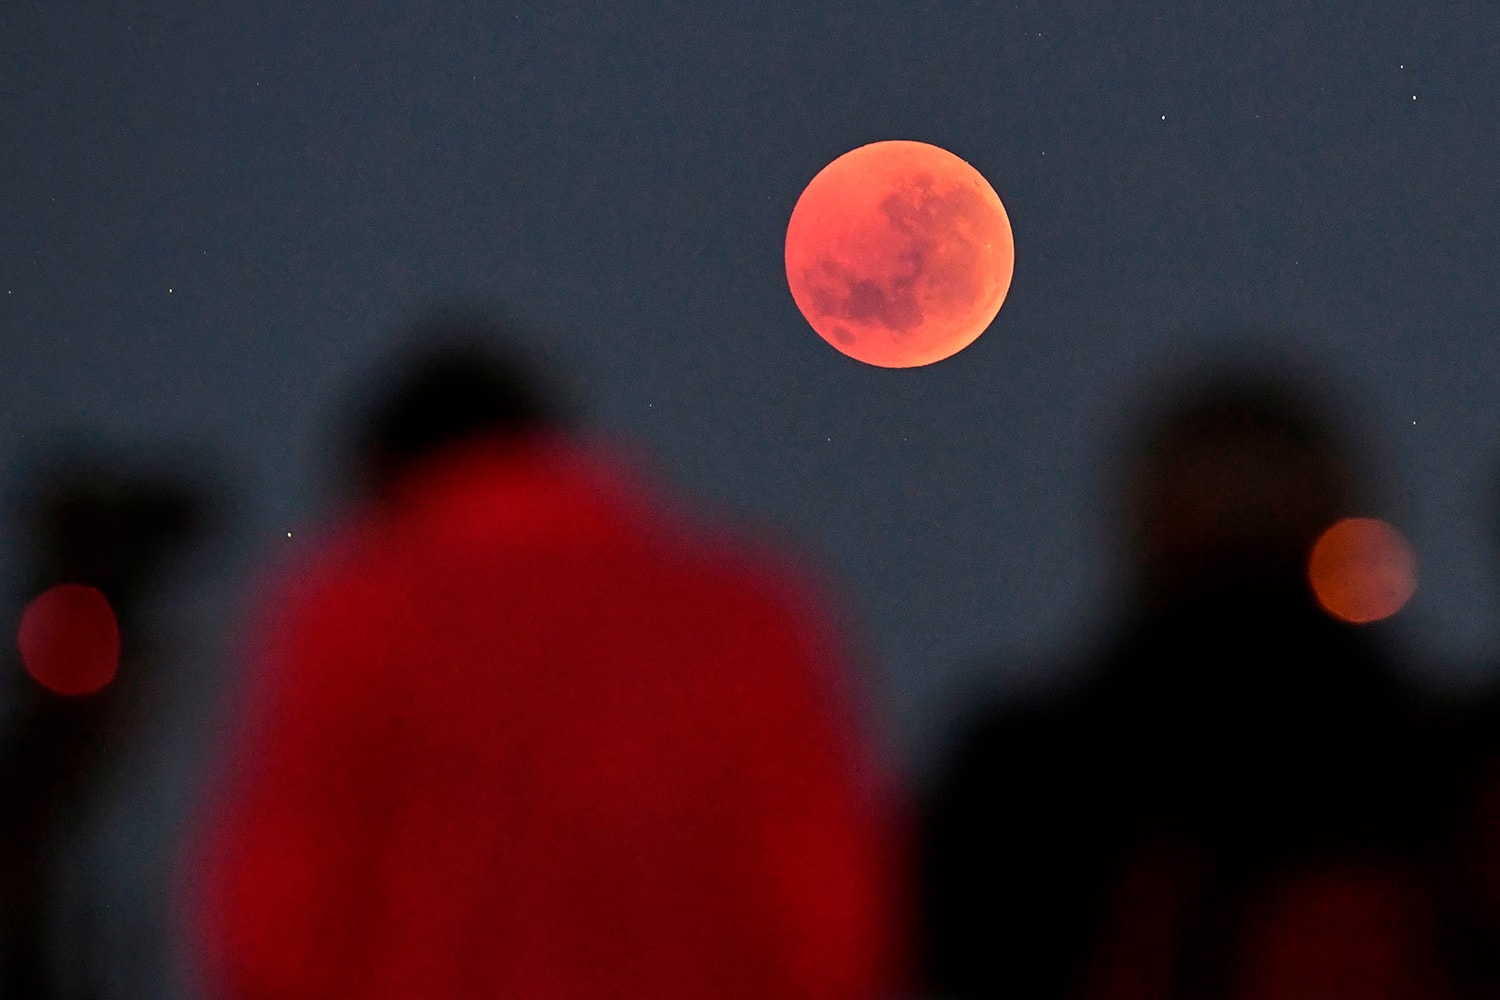 다음 주, 맨눈으로 볼 수 있는 '붉은 달'이 3년 만에 한국에 뜬다, 개기월식, 한국천문연구원, 슈퍼문